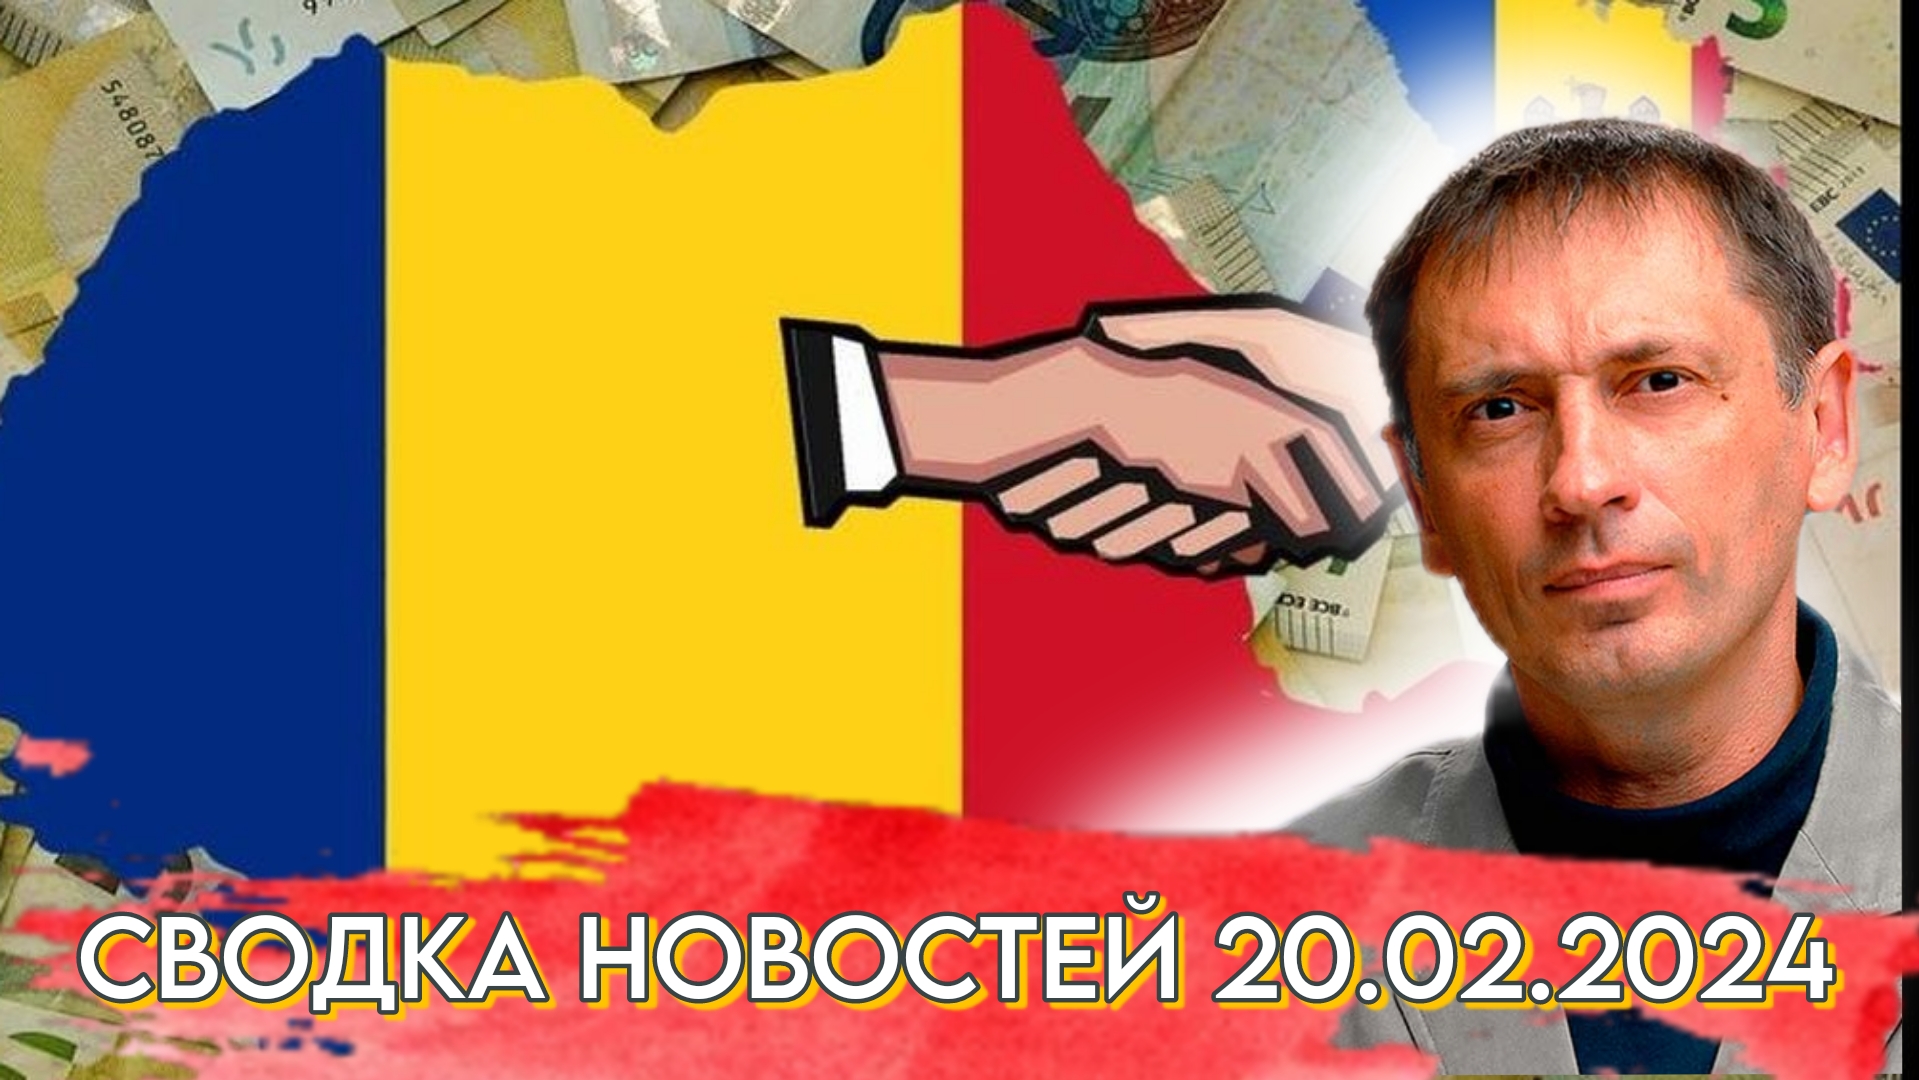 Очередной предвестник поглощения Молдавии соседней Румынией | БРЕКОТИН